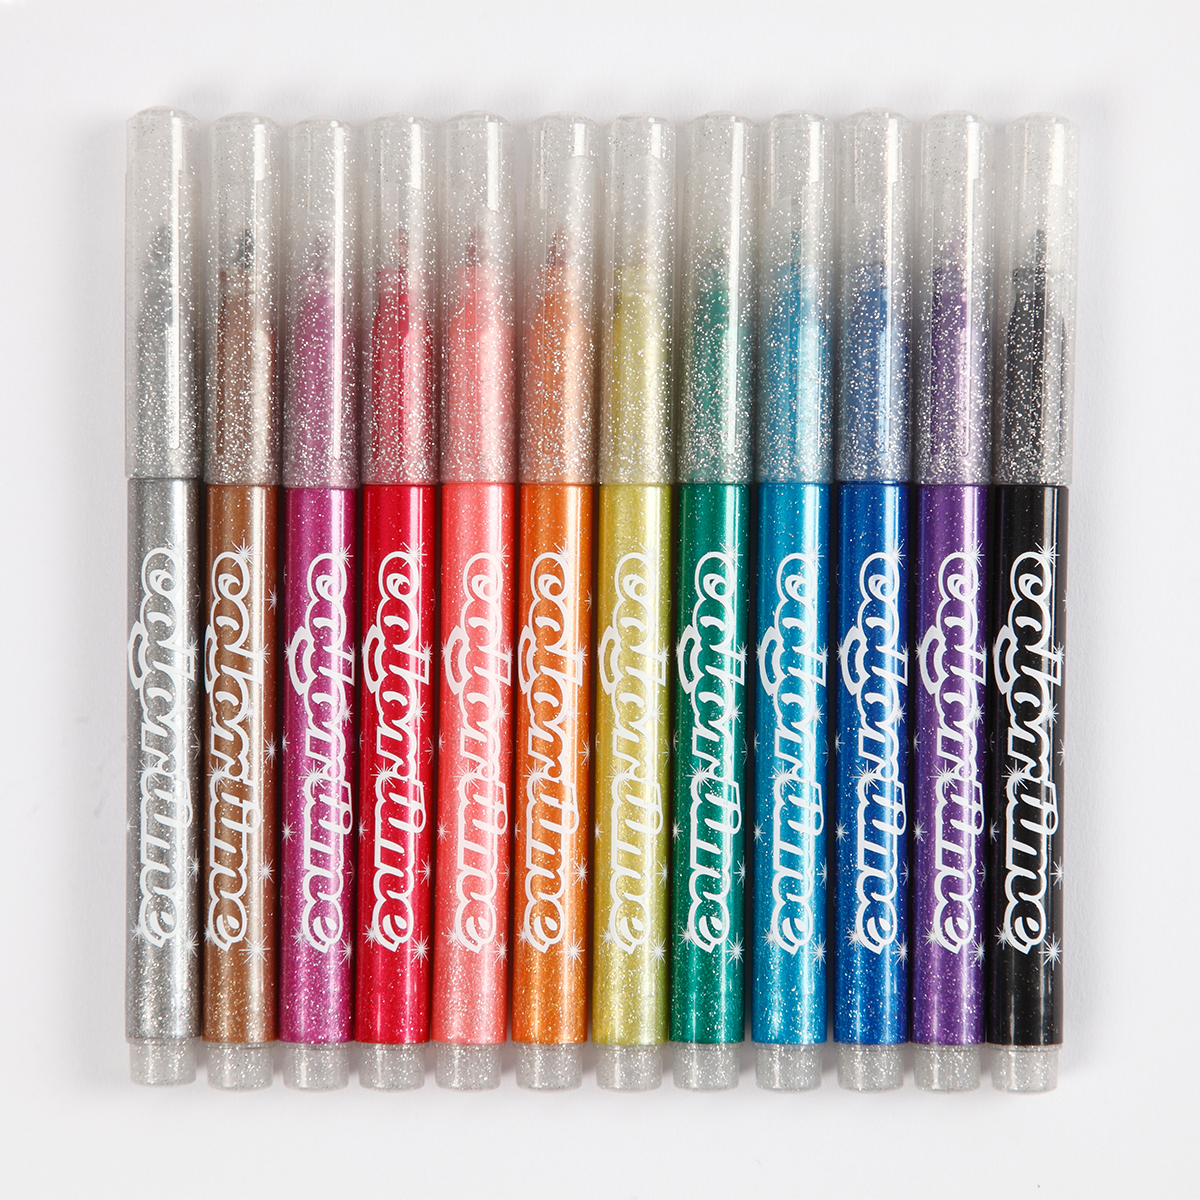 Glitter Pens 12-set in the group Pens / Artist Pens / Felt Tip Pens at Pen Store (111873)